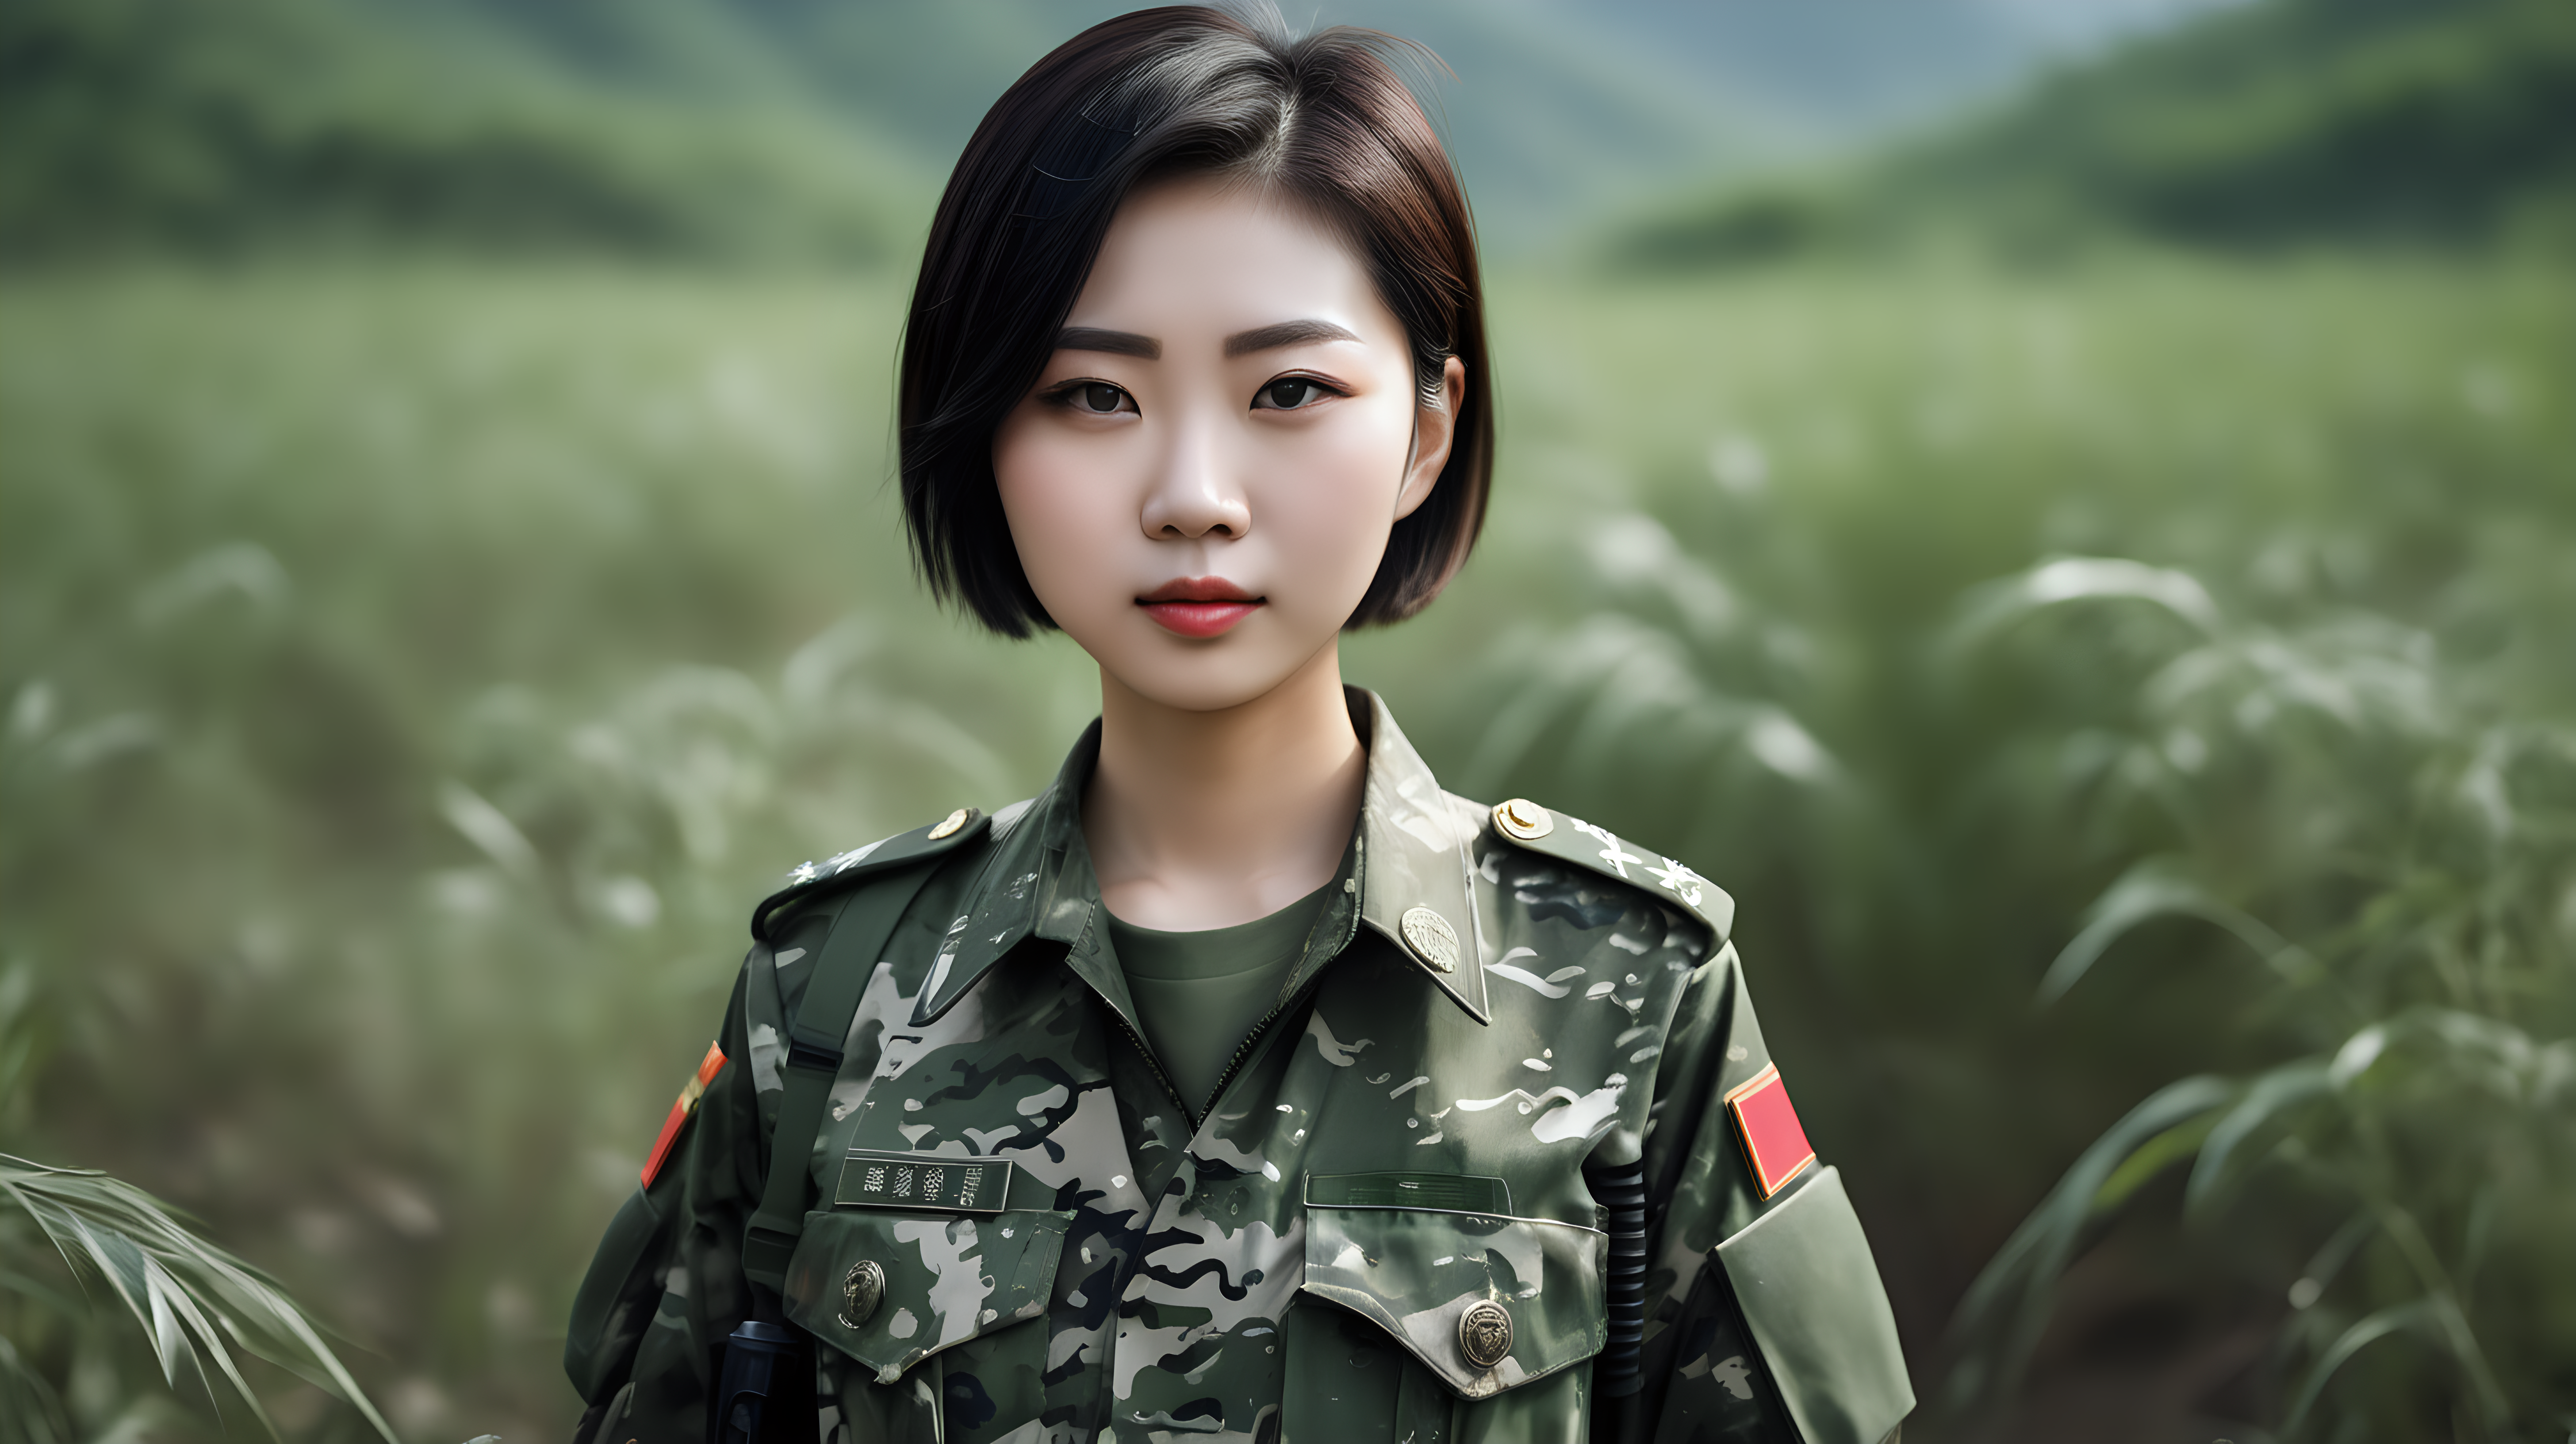 一名中国女兵
青年人
短发
胸大
正脸
迷彩服
站在野外